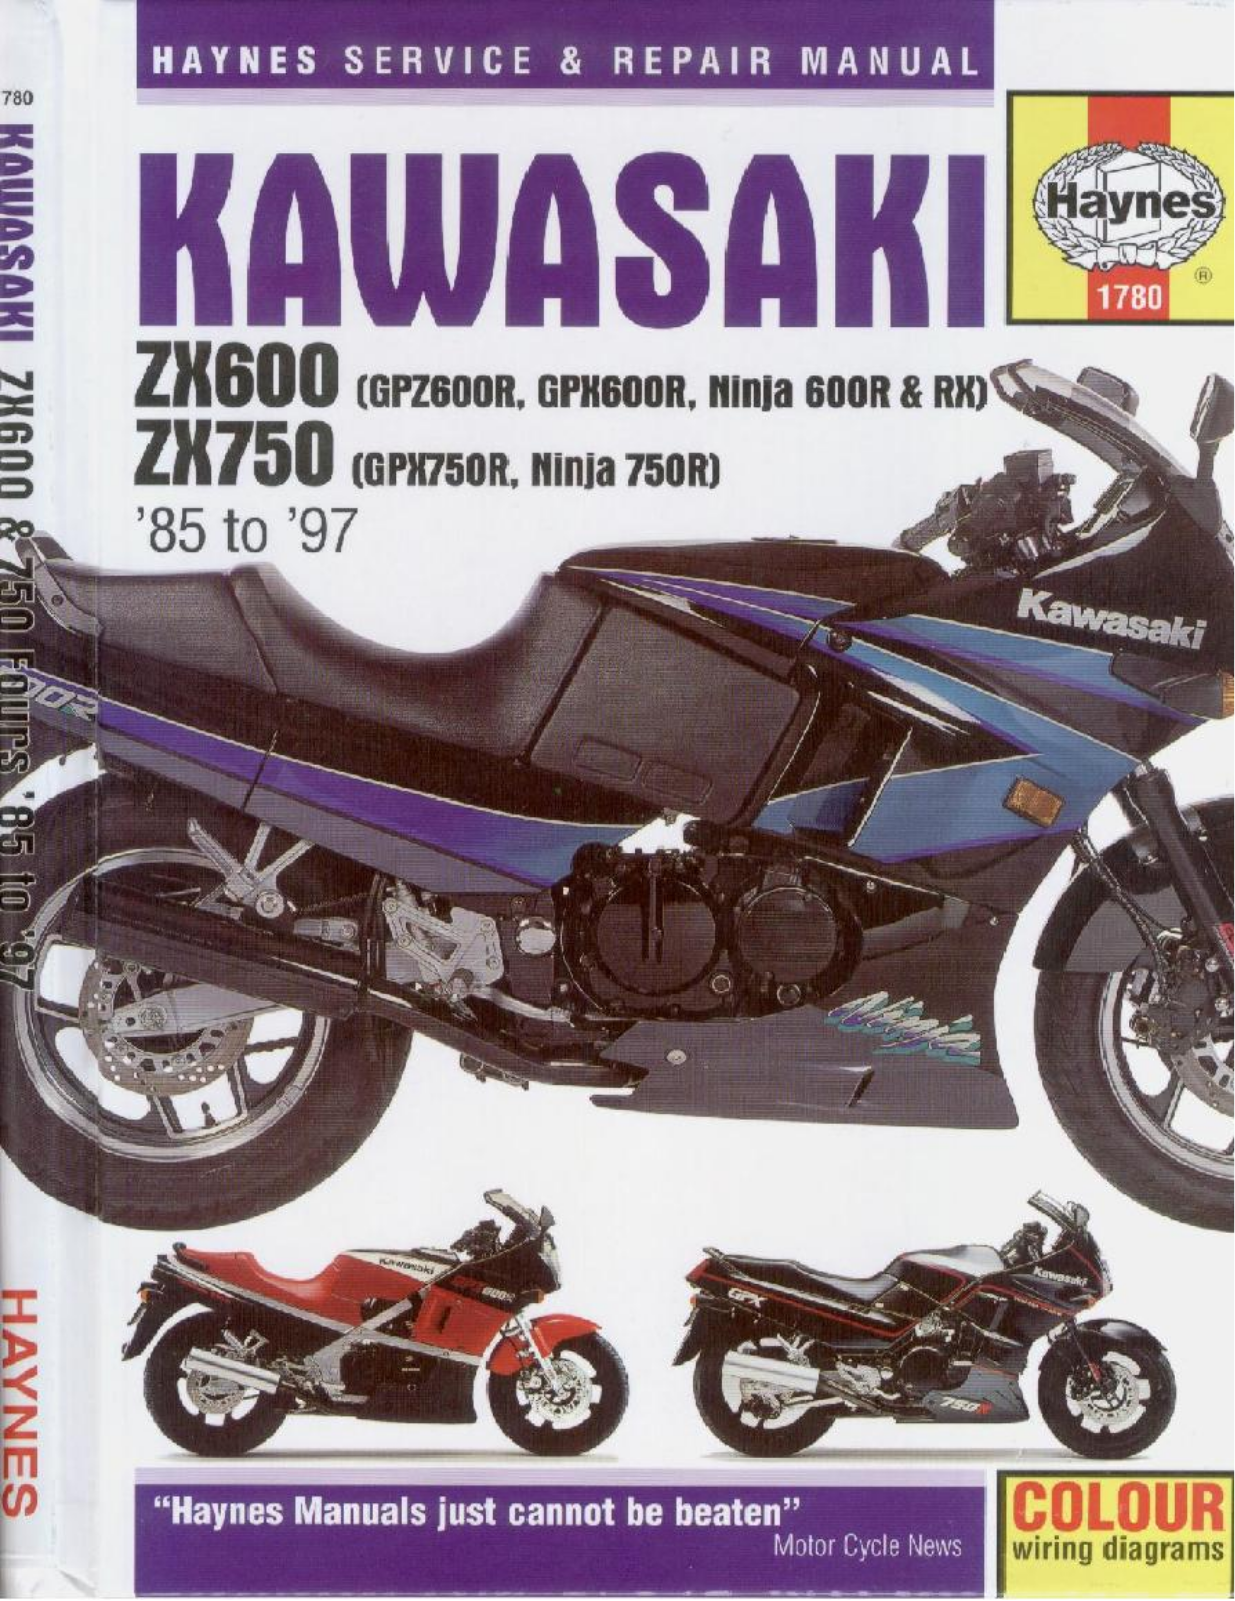 Kawasaki Zx-600 1985, Zx750 1985 Service Manual